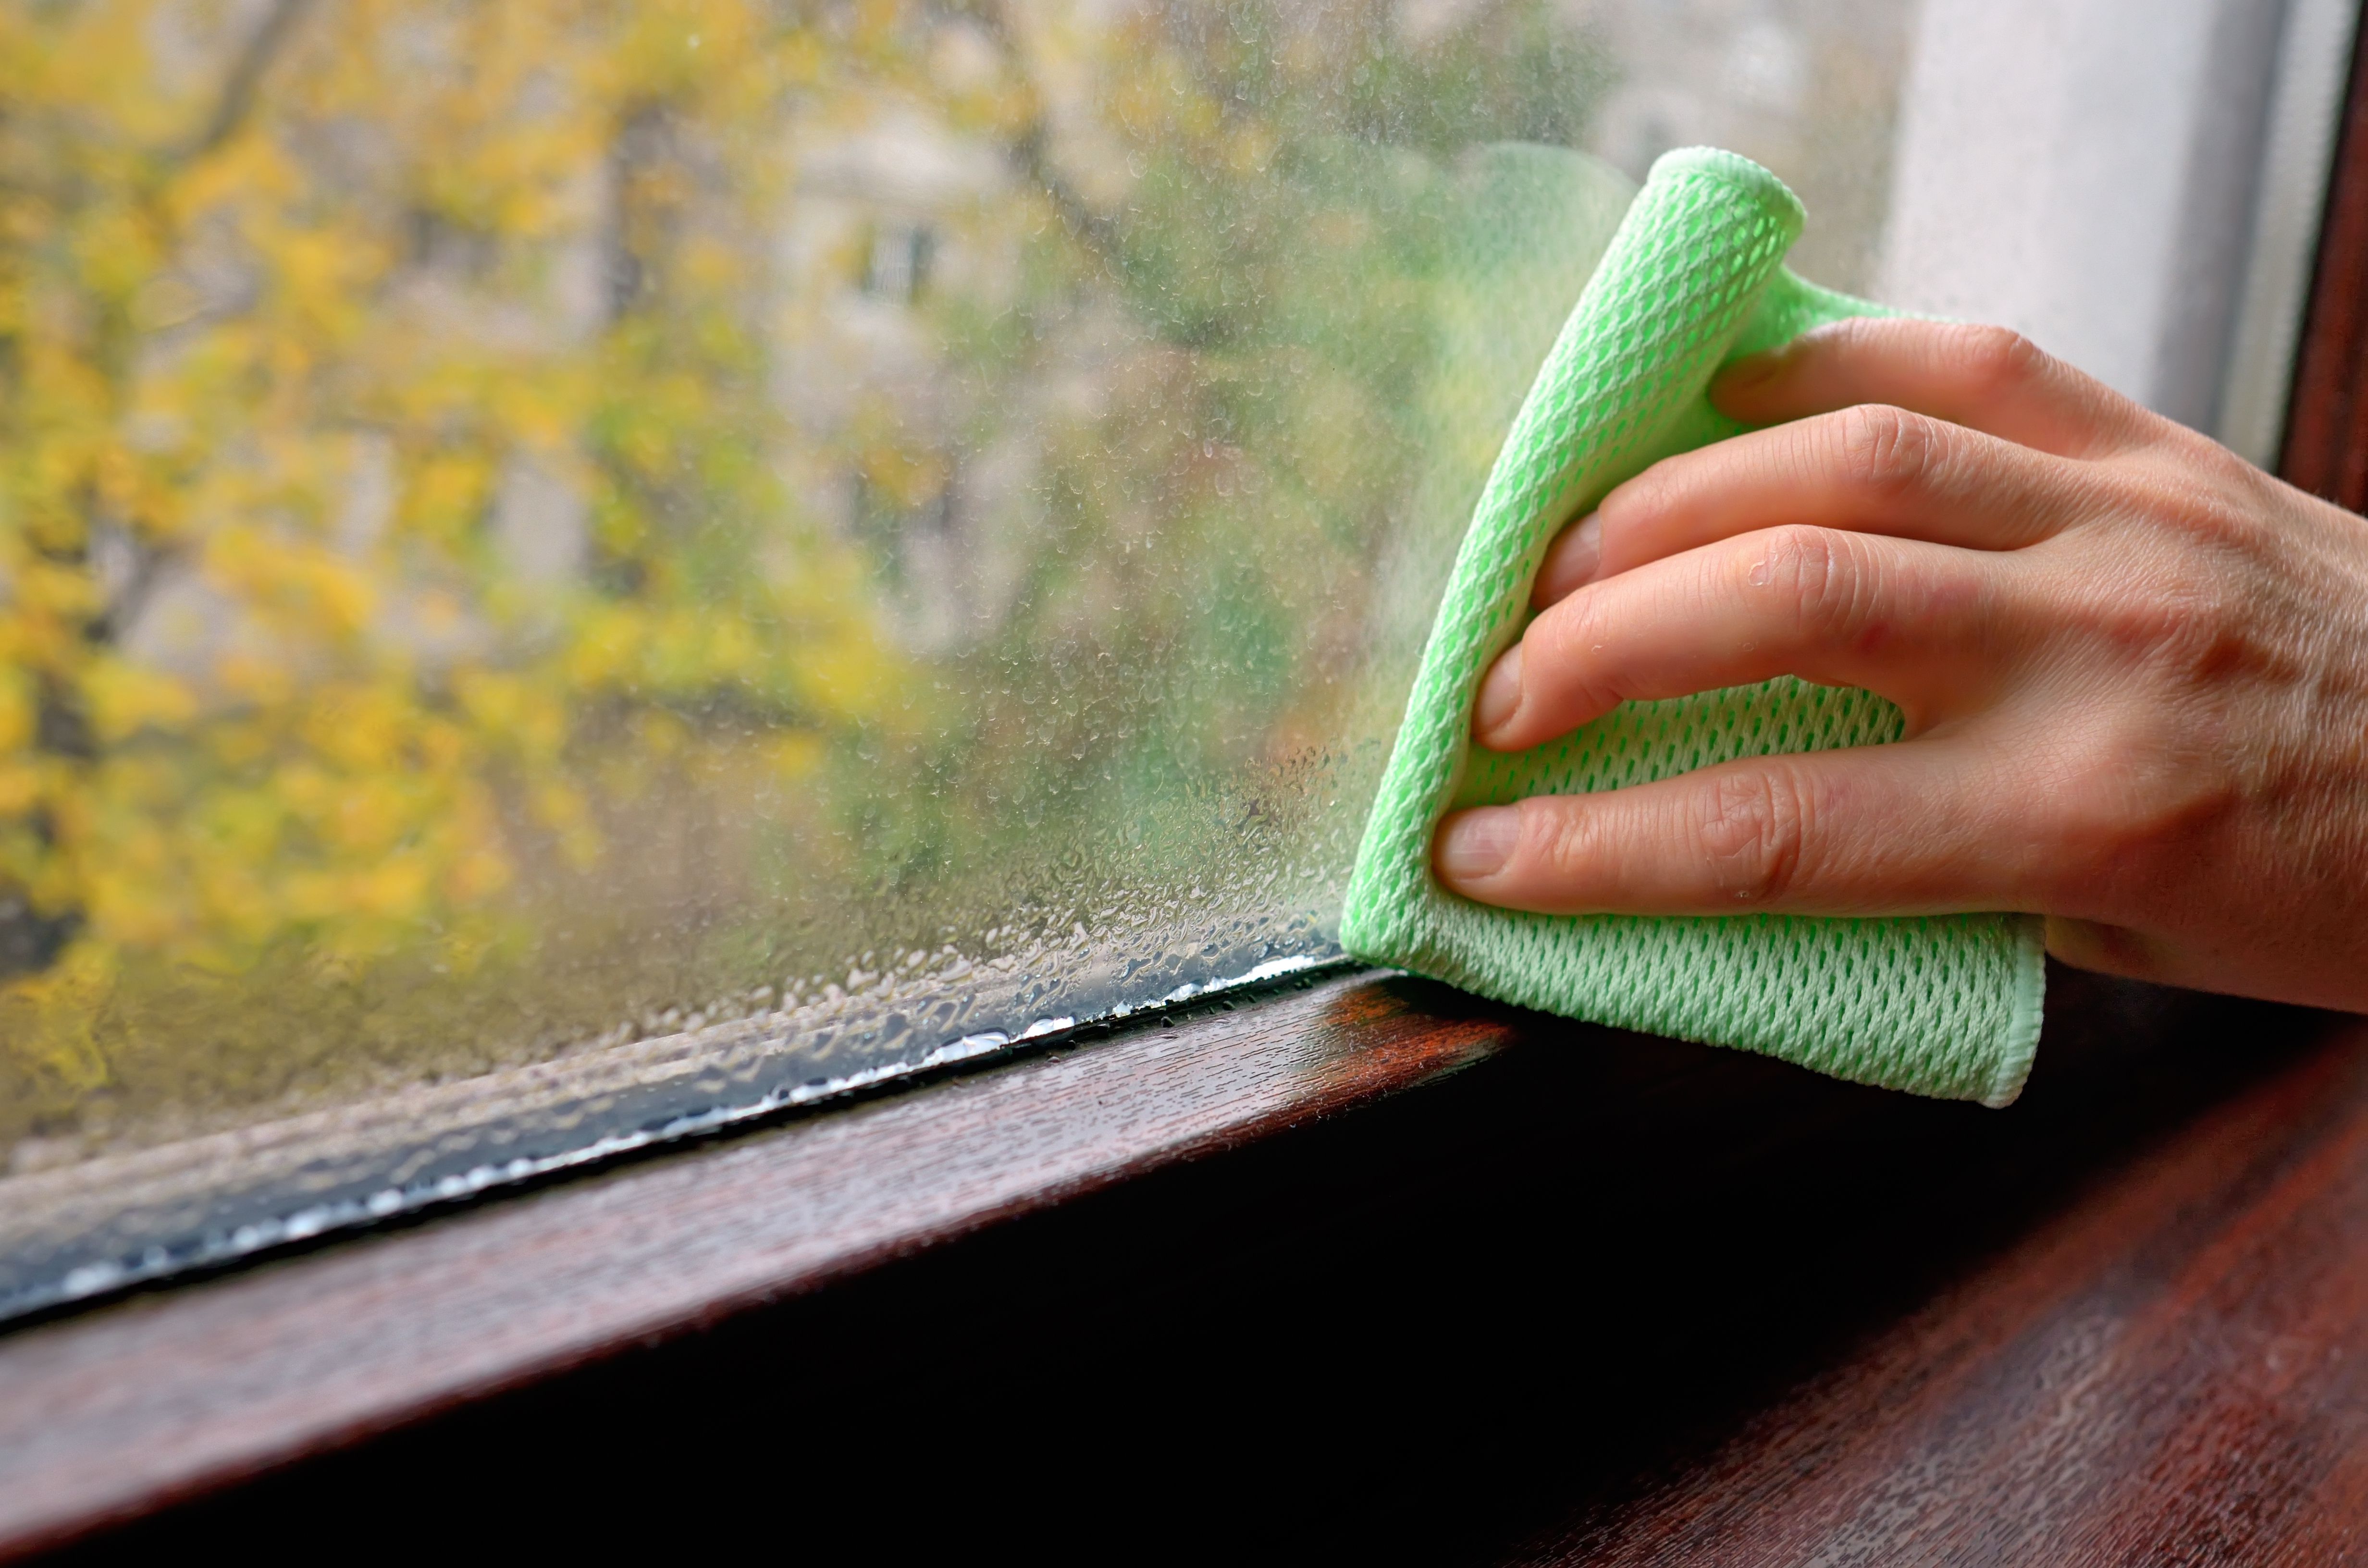 5 conseils qui aident à régler le problème de condensation sur vos fenêtres  - Giguère portes et fenêtres